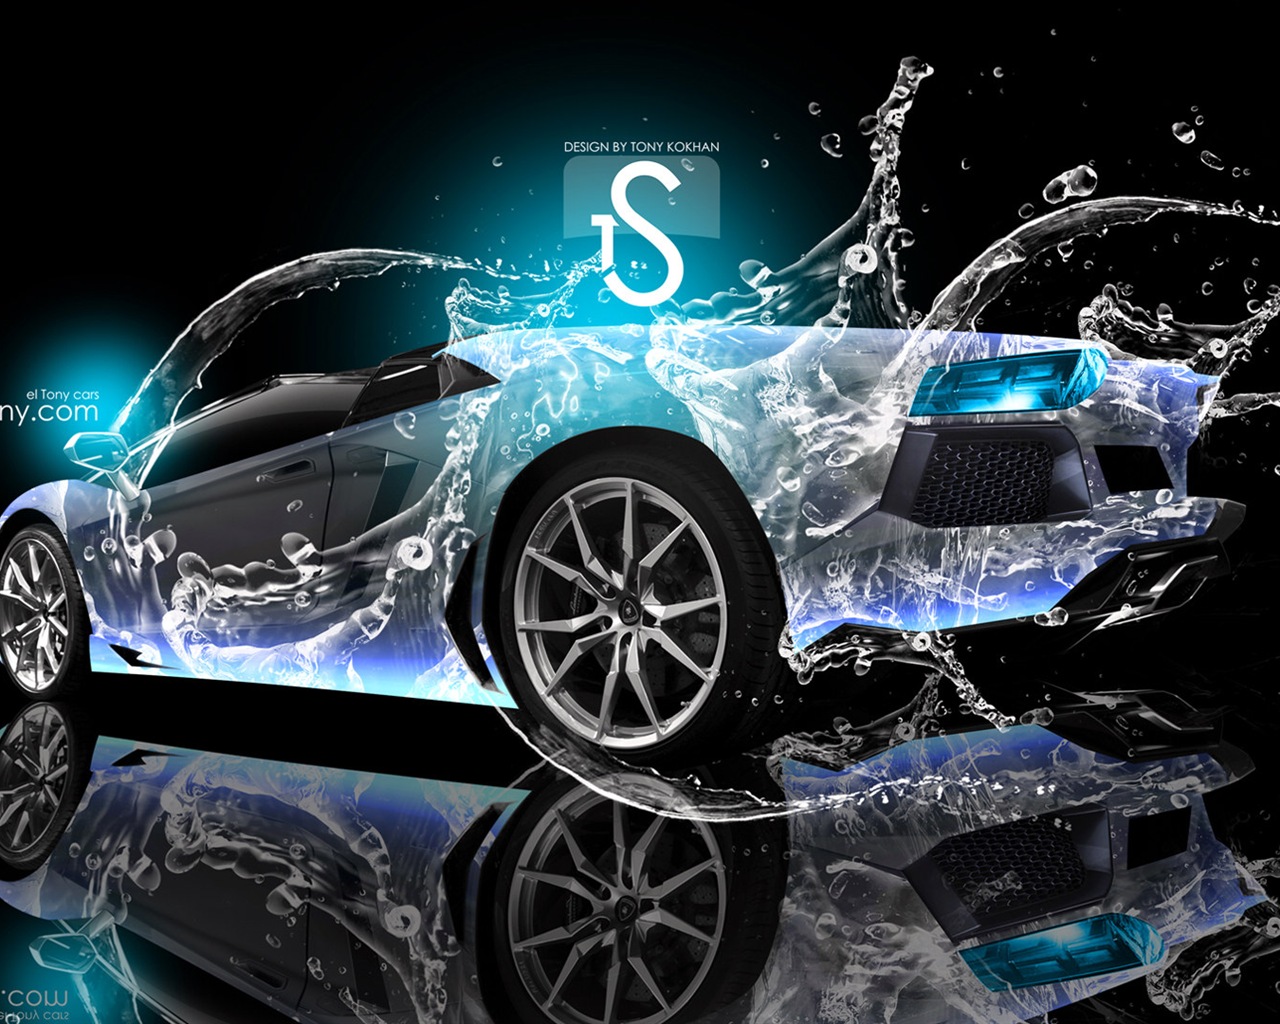 Les gouttes d'eau splash, beau fond d'écran de conception créative de voiture #19 - 1280x1024